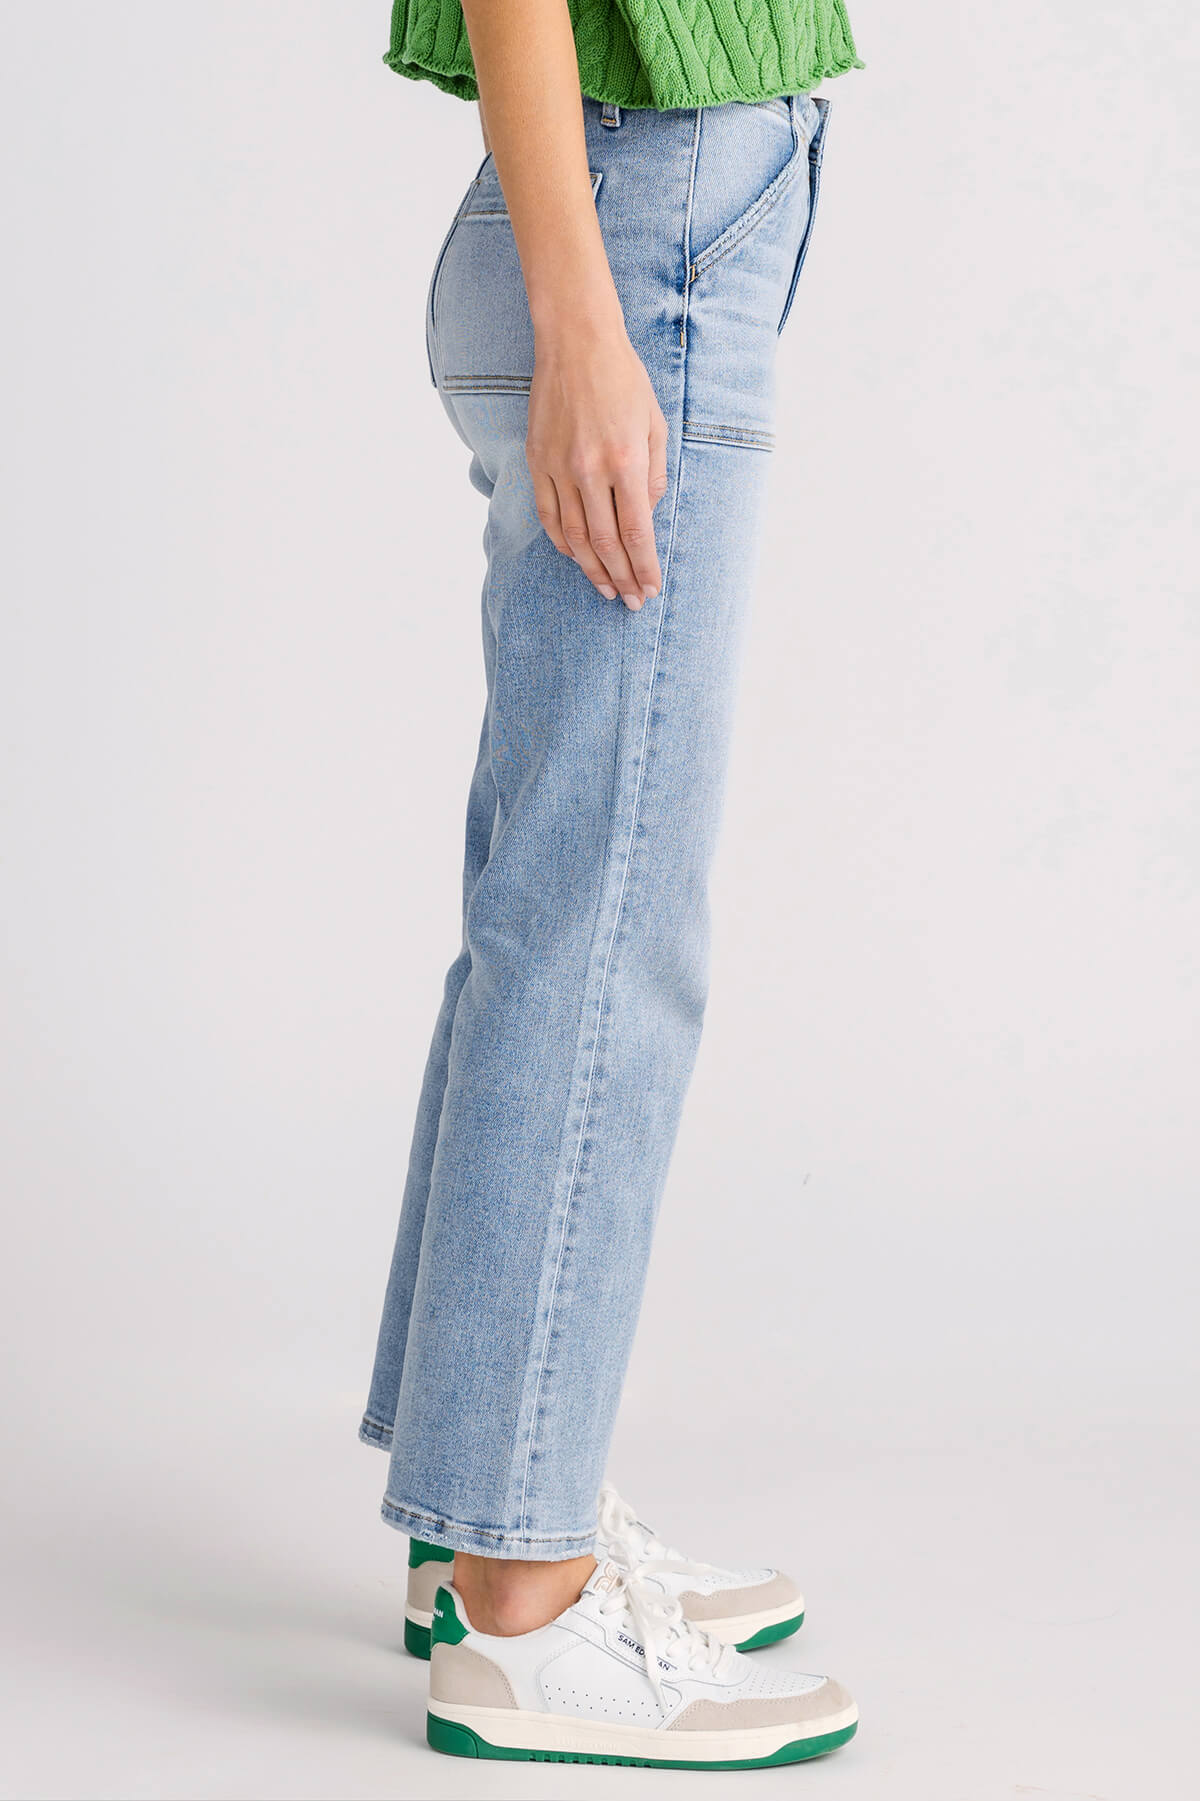 Style & Co 5-Pocket Design Skinny Jeans for Women | Mercari